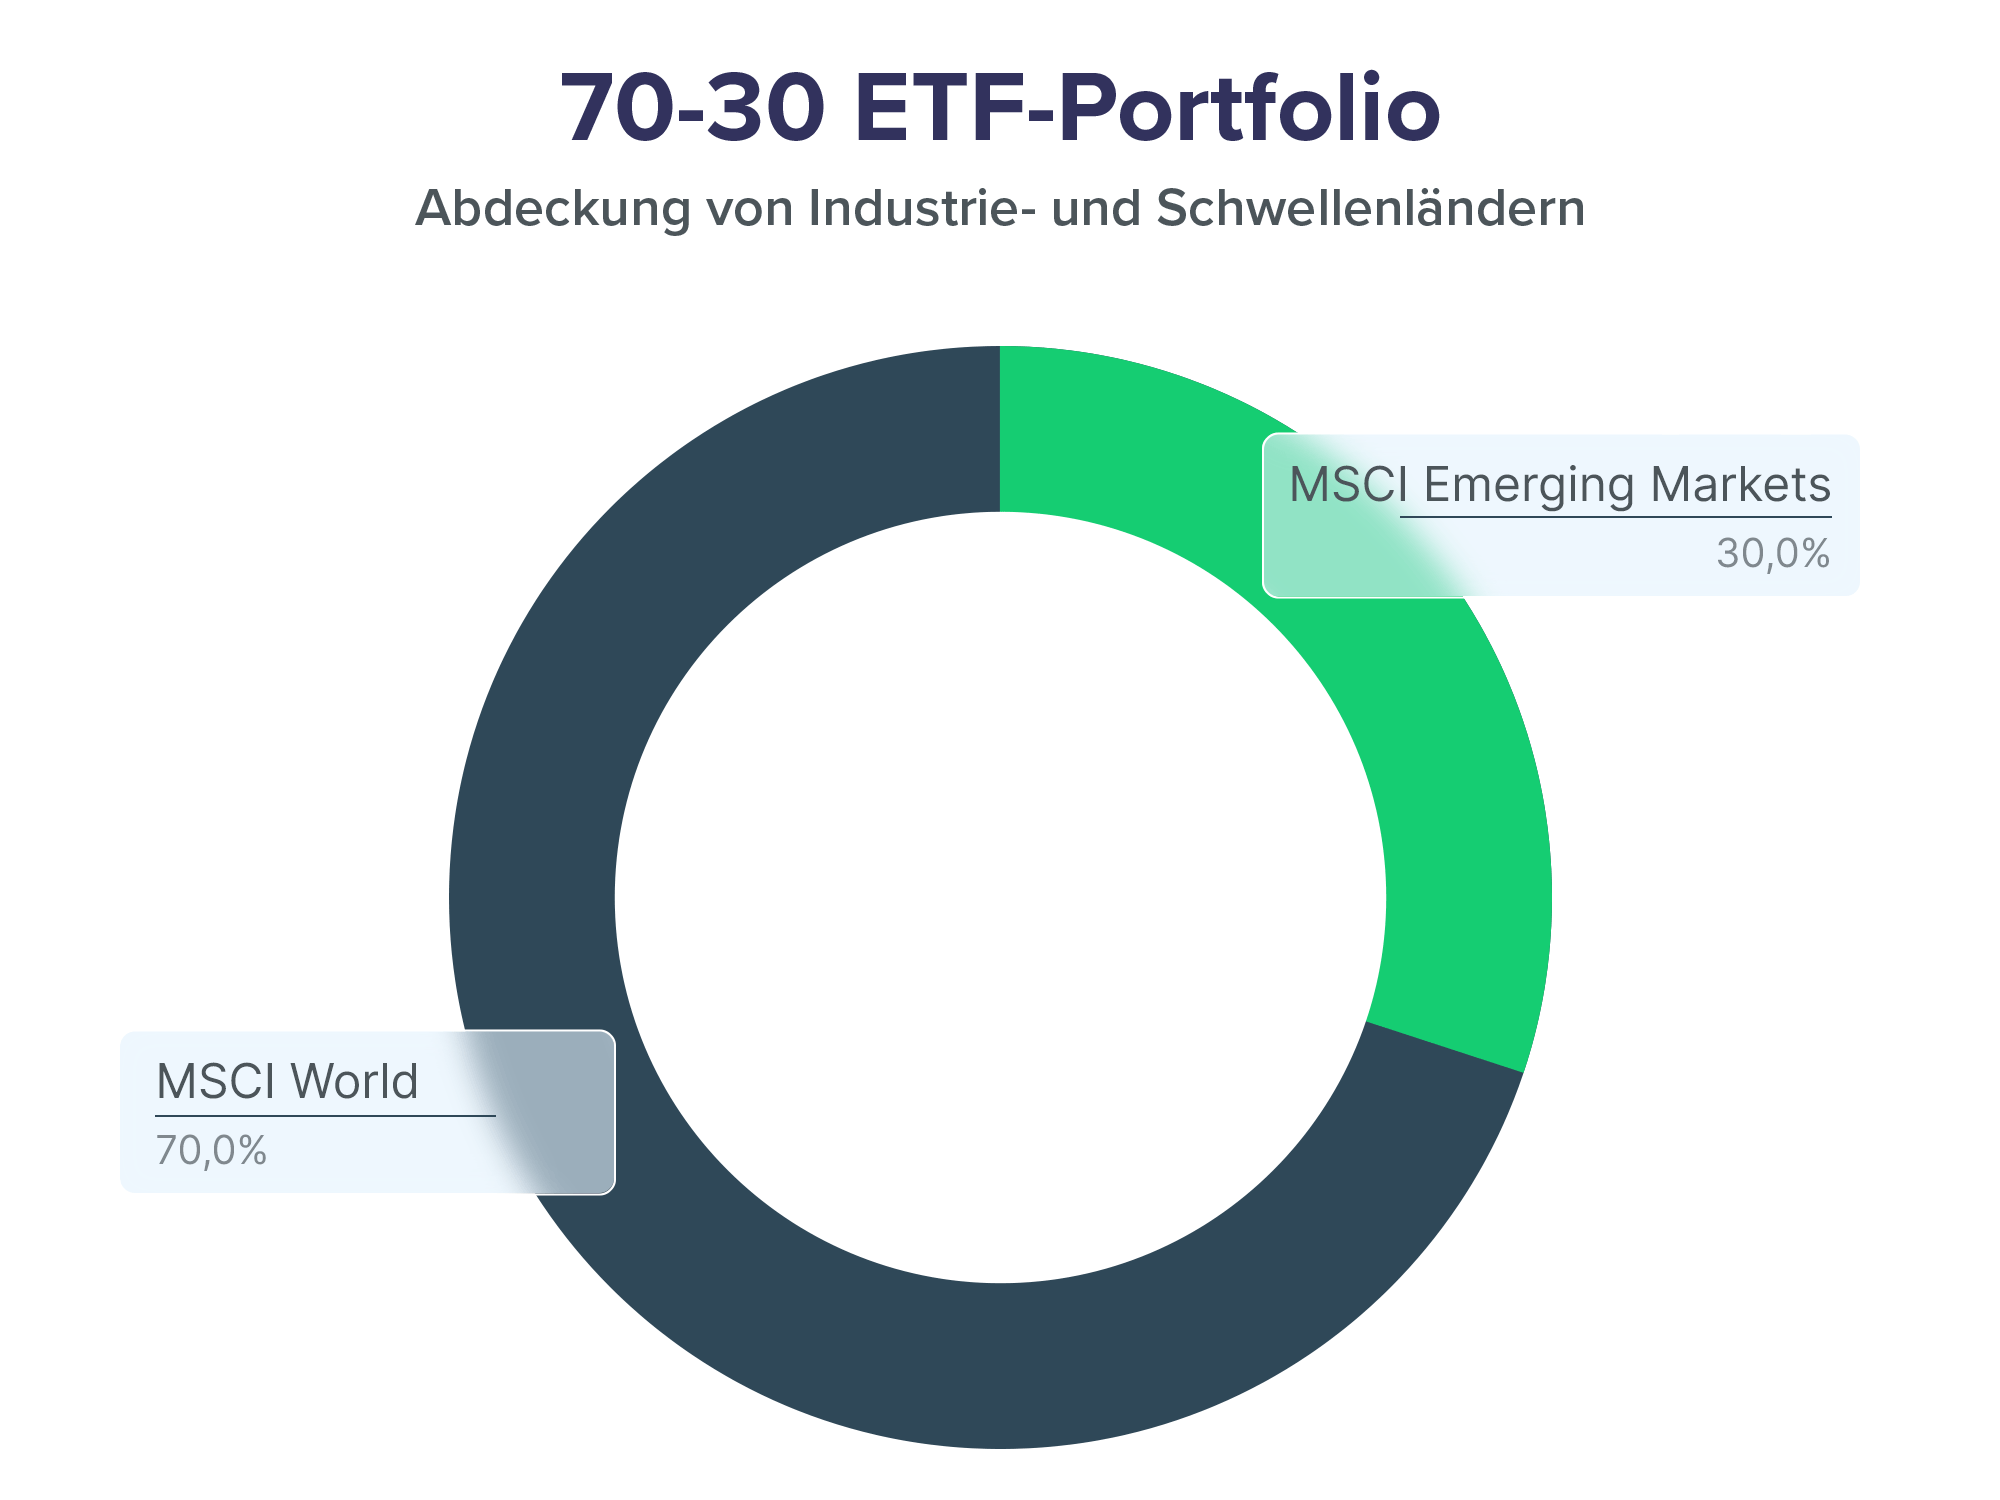 Kreisdiagramm des 70-30 ETF Portfolios, in dem 70% in den MSCI World und 30% in den MSCI Emerging Markets ETF investiert werden.